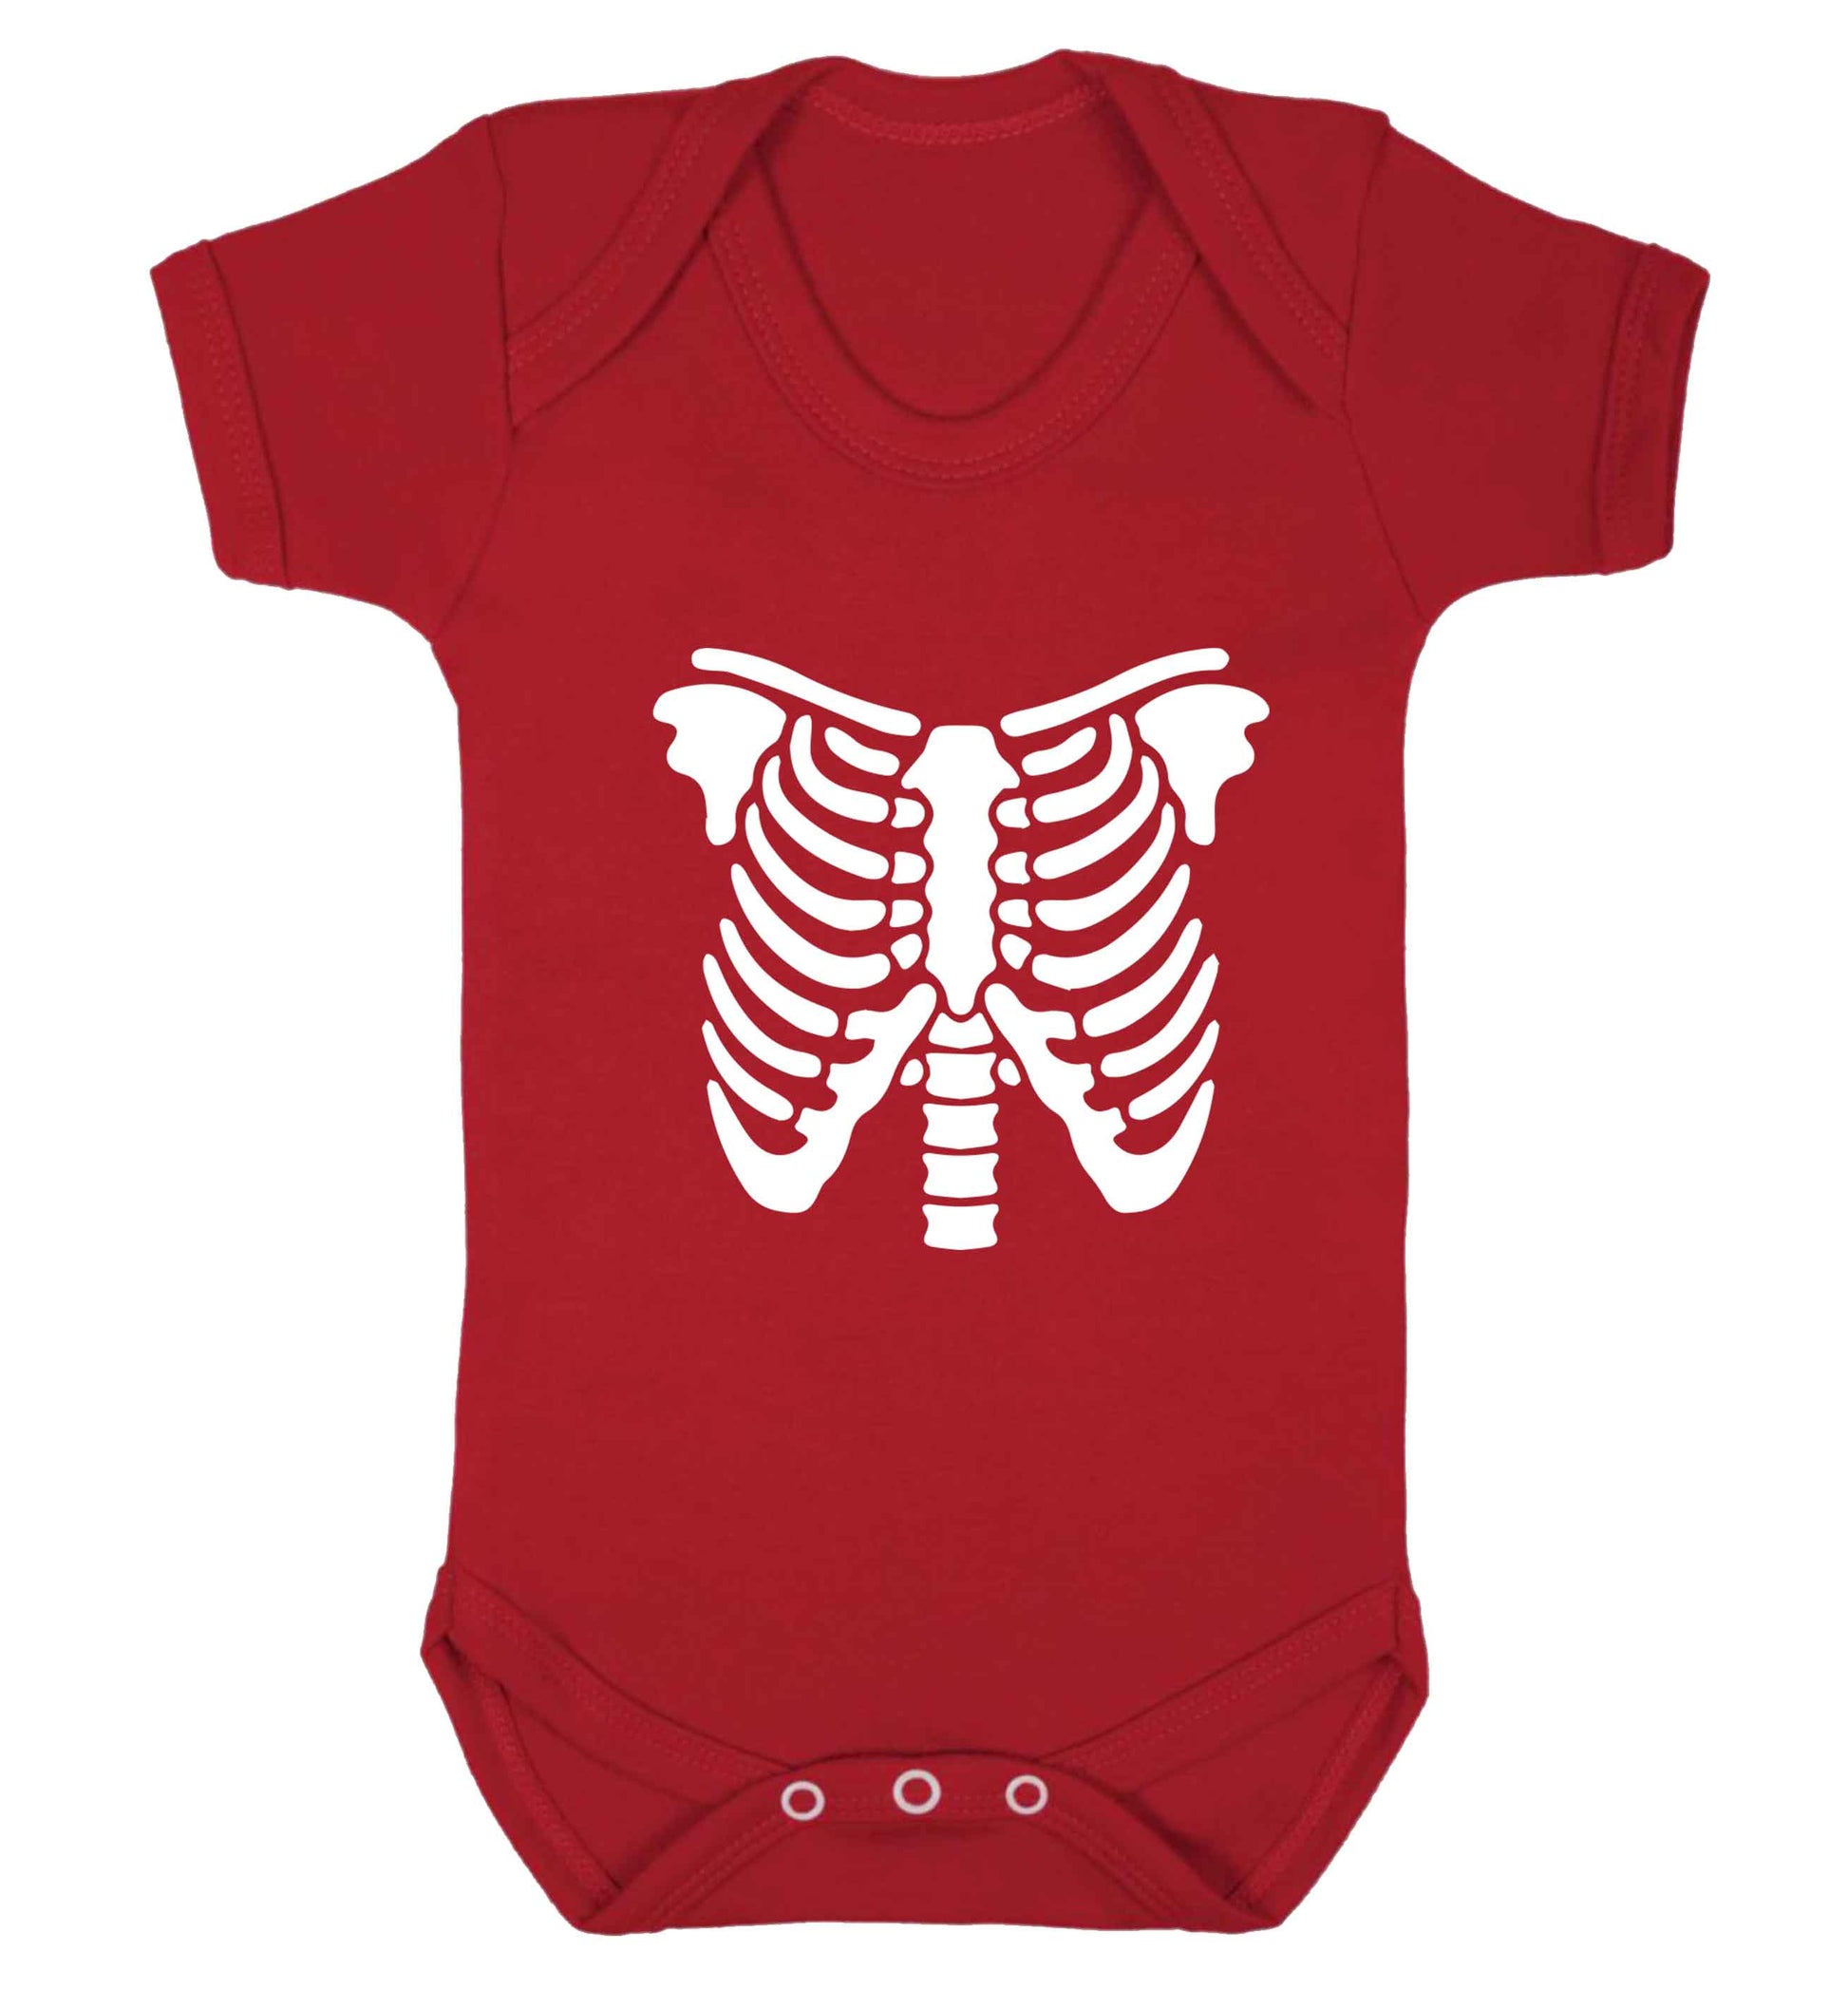 Skeleton ribcage baby vest red 18-24 months